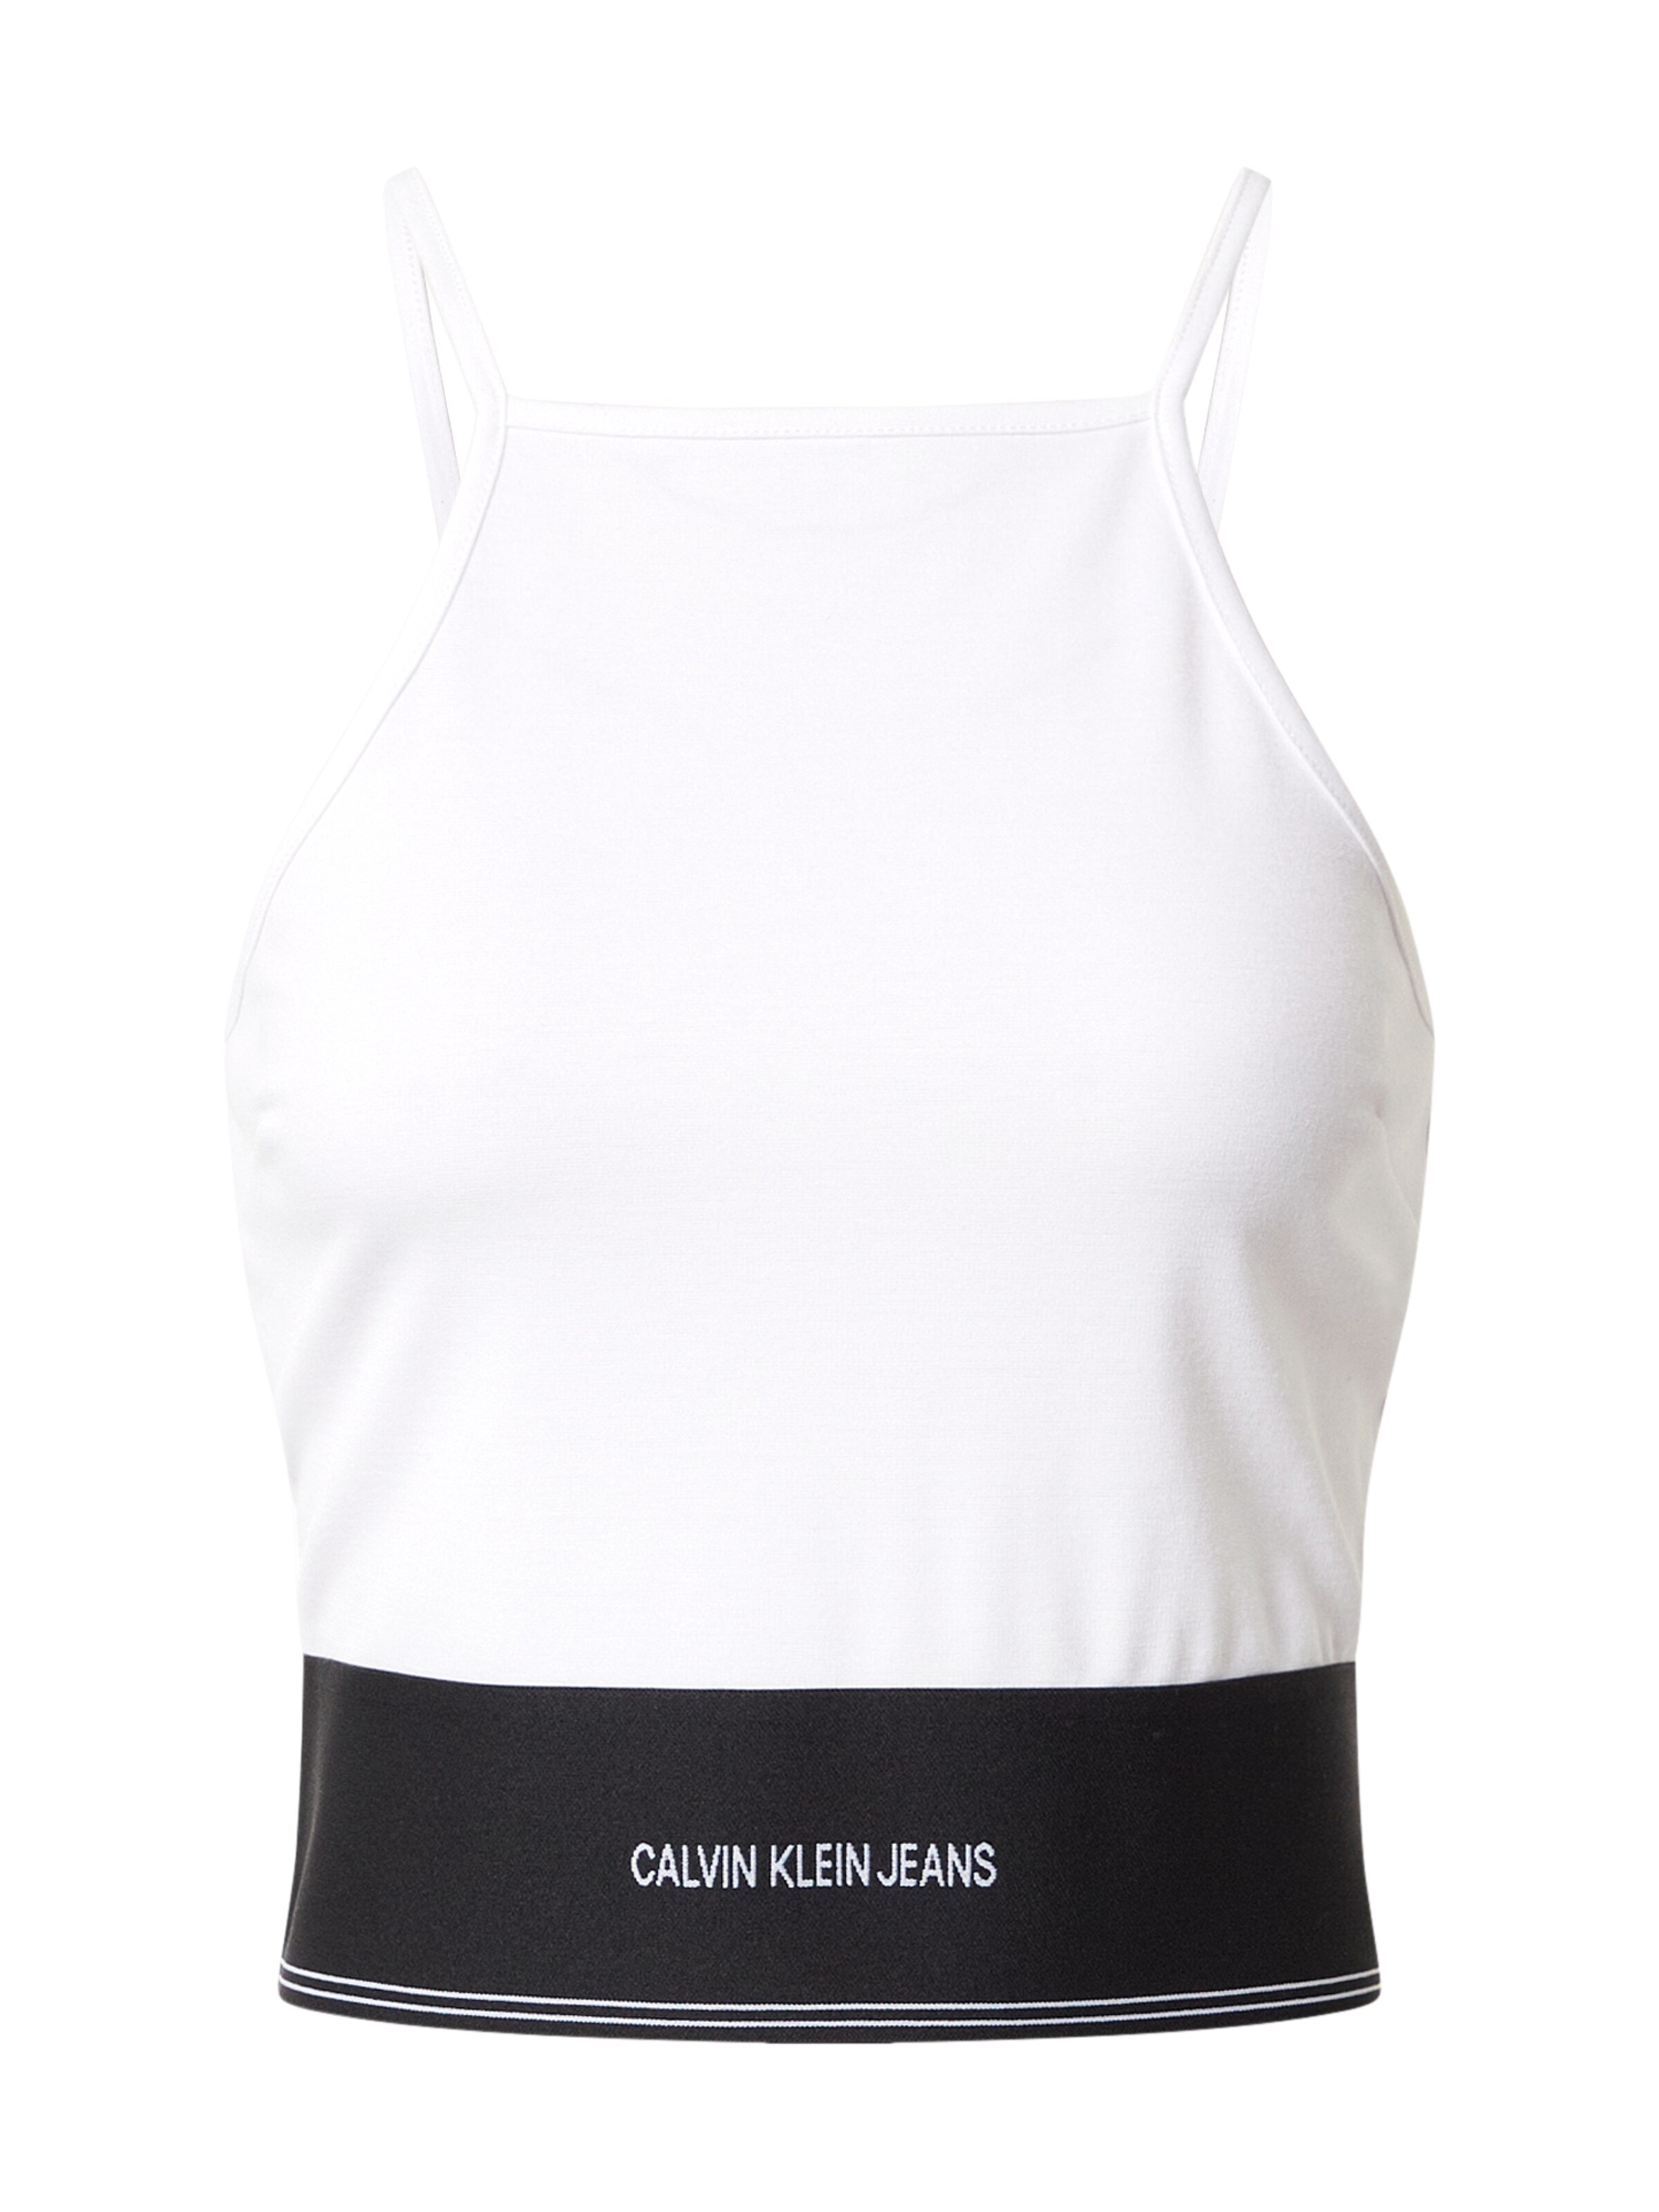 Frauen Shirts & Tops Calvin Klein Jeans Top in Weiß - KP60238